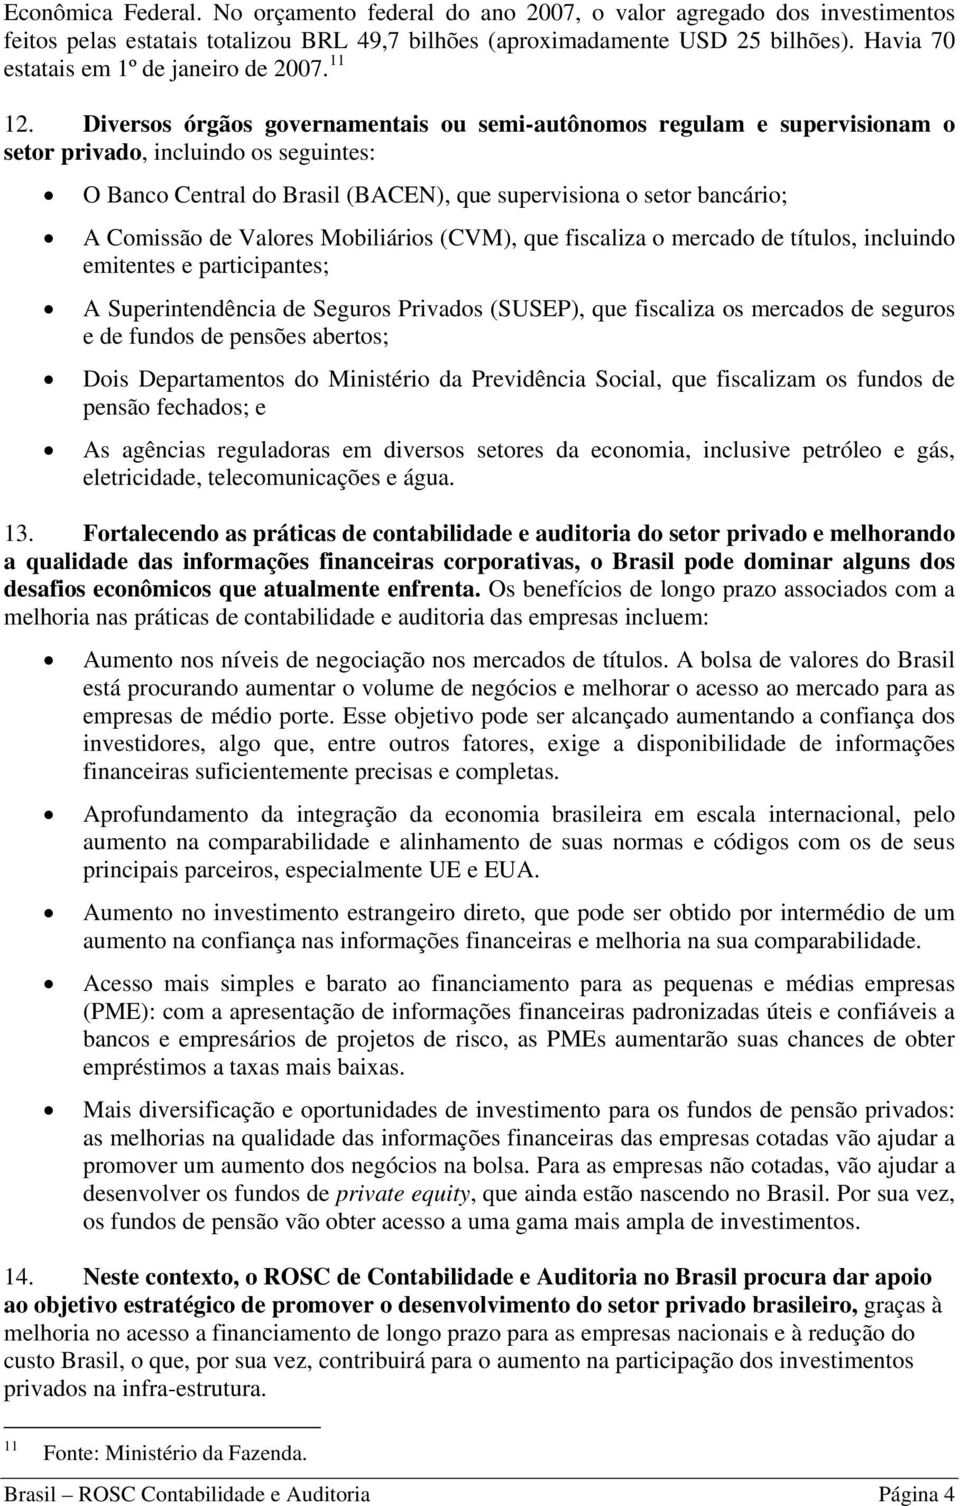 Diversos órgãos governamentais ou semi-autônomos regulam e supervisionam o setor privado, incluindo os seguintes: O Banco Central do Brasil (BACEN), que supervisiona o setor bancário; A Comissão de